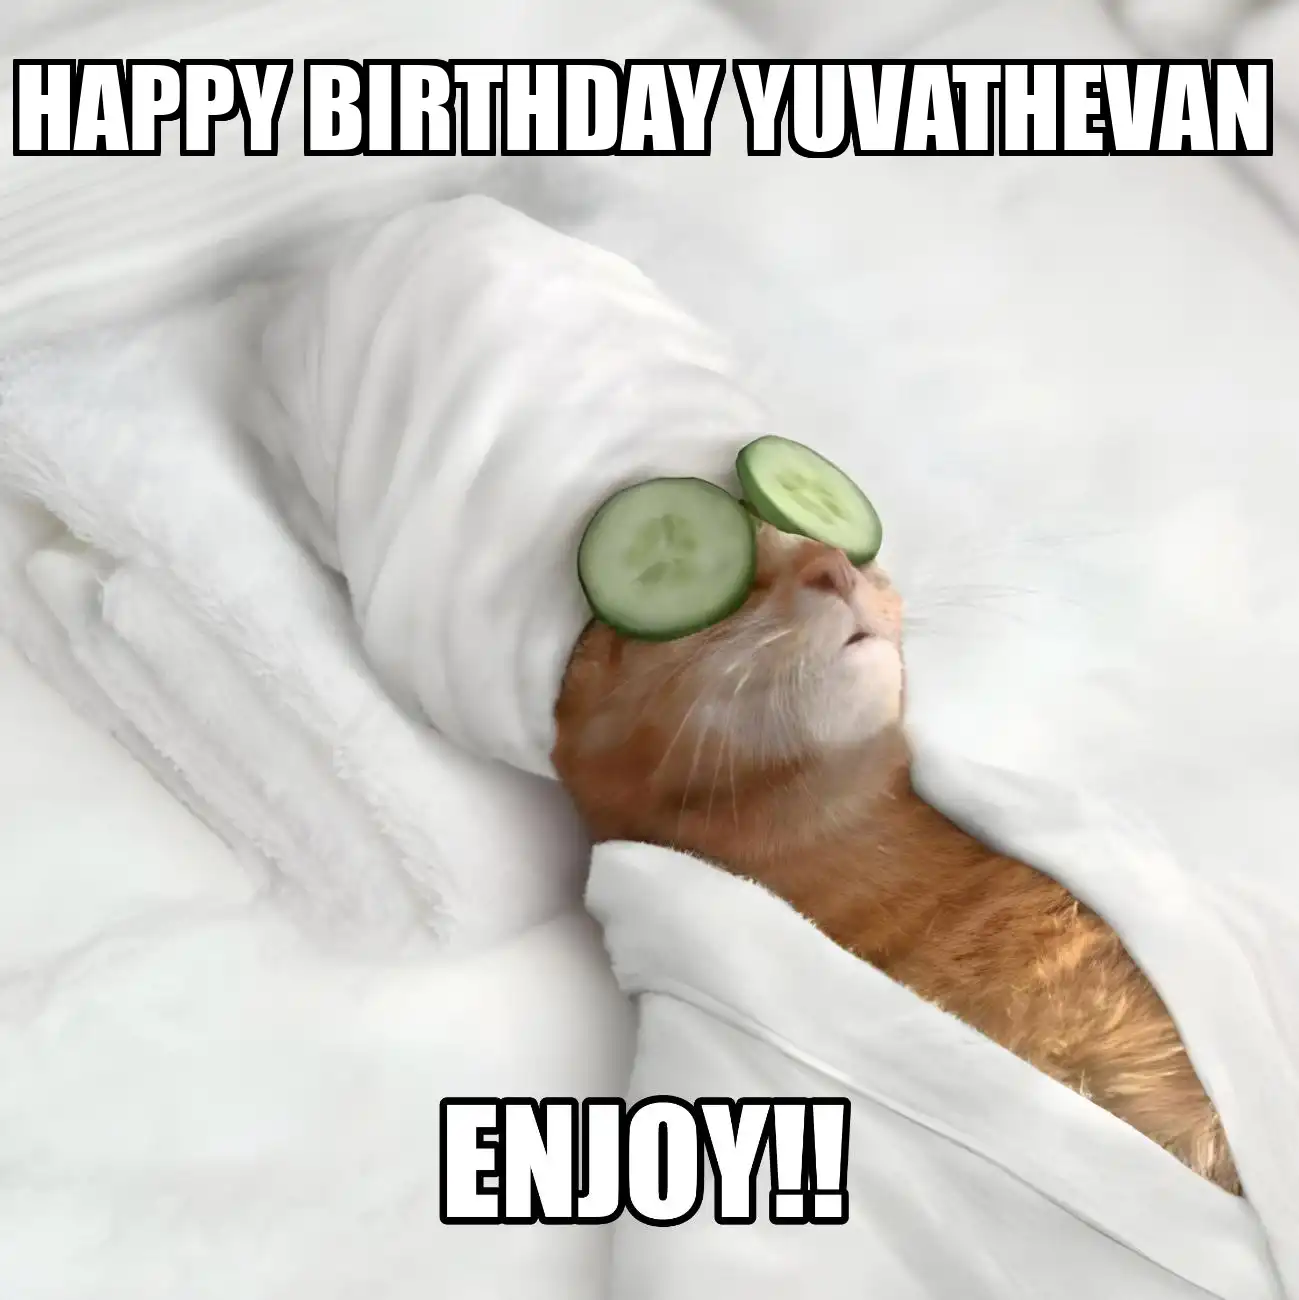 Happy Birthday Yuvathevan Enjoy Cat Meme